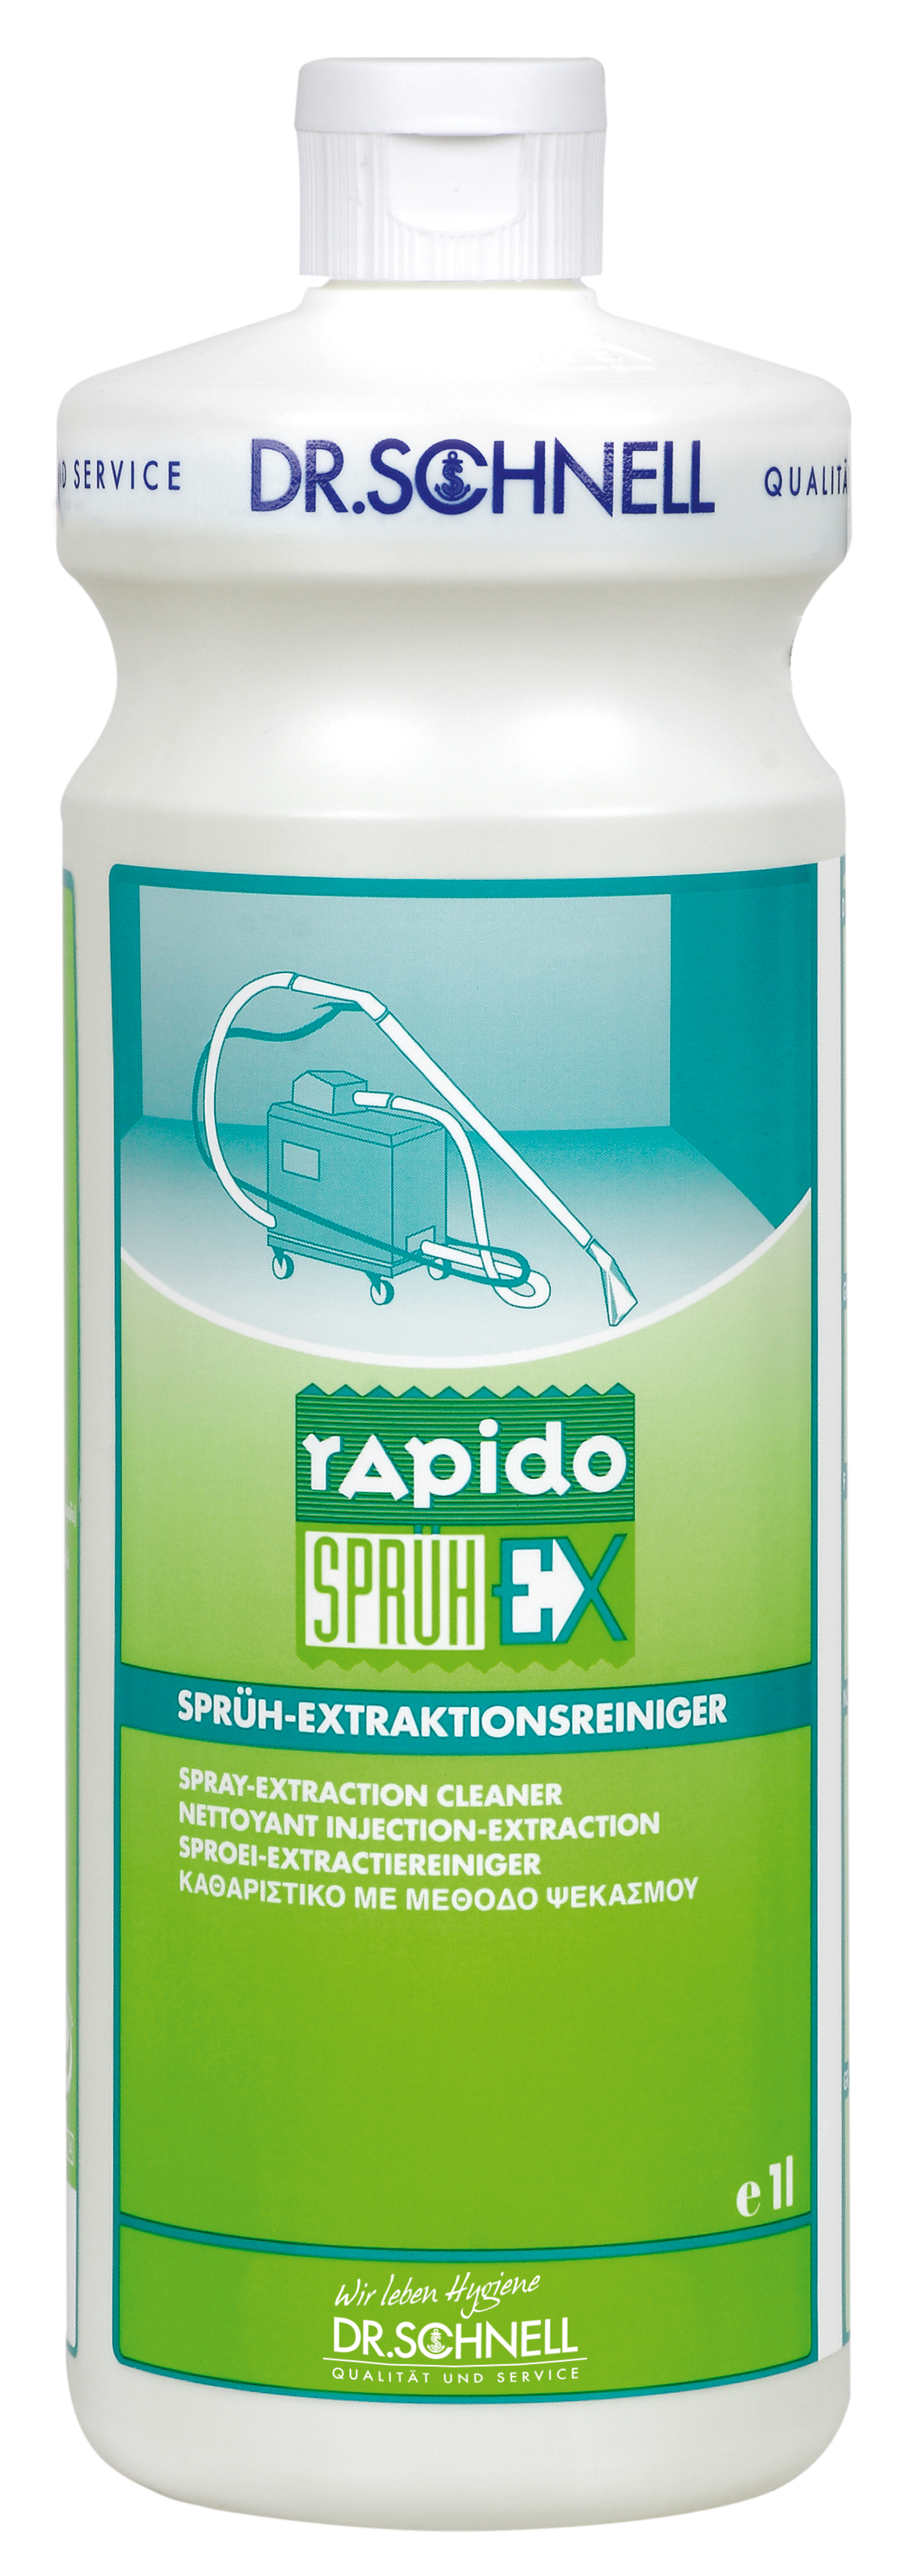 Rapido Sprüh-Ex 1ltr. Sprühex-,trationsmittel, Dr. Schnell